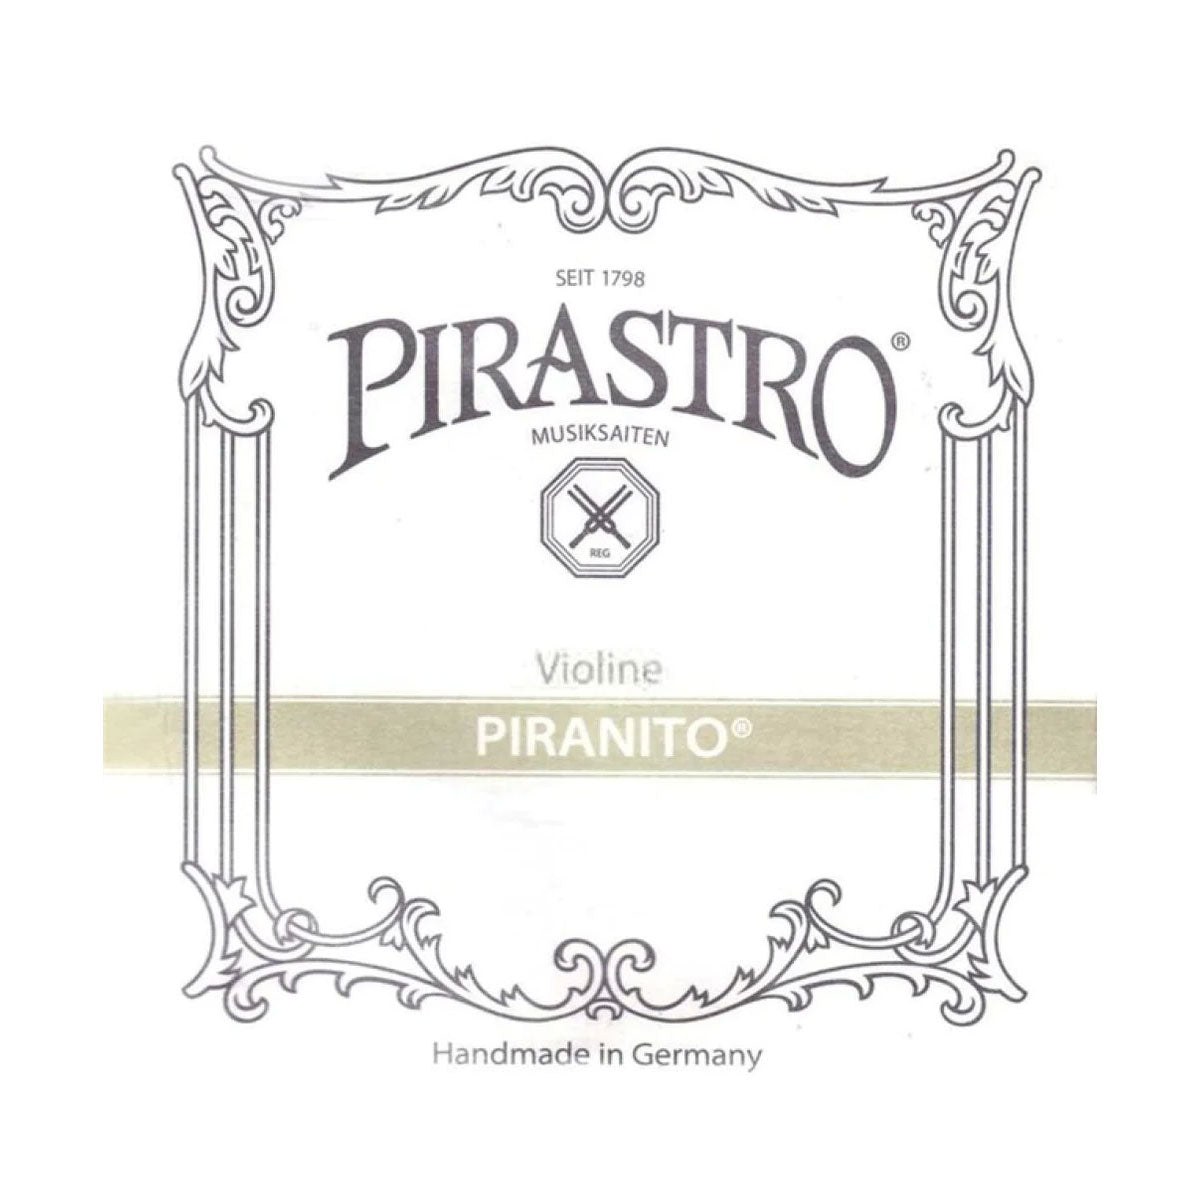 Pirastro PI6150 Piranito 4/4 Violin String Set